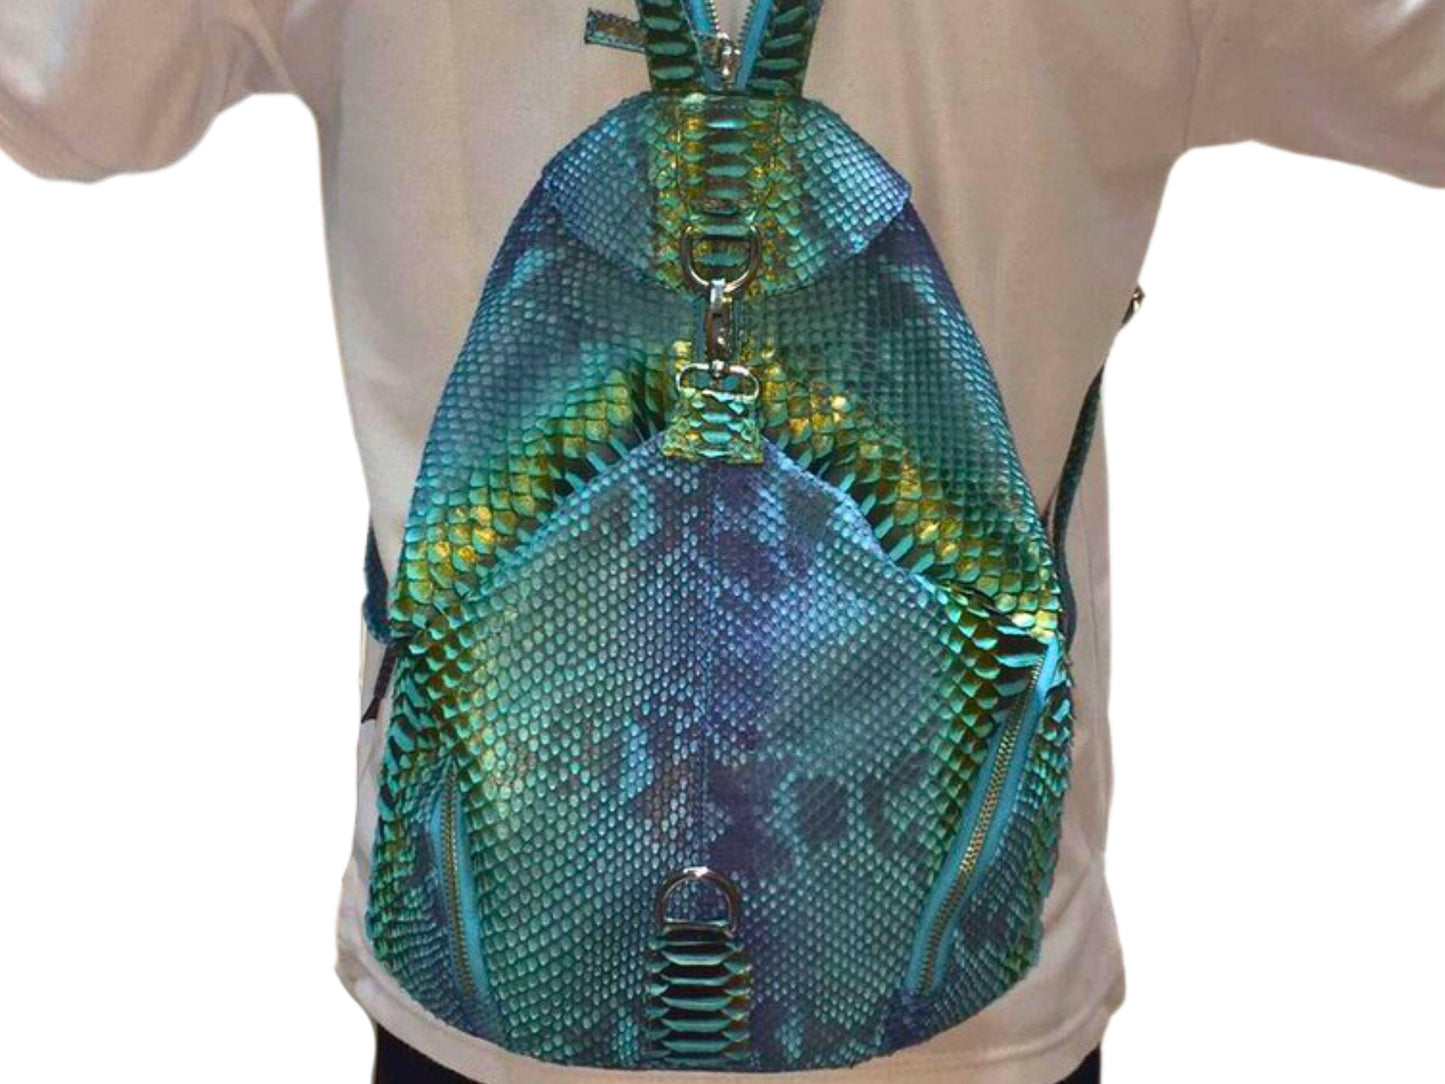 Backpacks Handmade Snakeskin Backpack, Python Travel Bag, School Backpack, Unique Gift Python Jacket by LFM Fashion